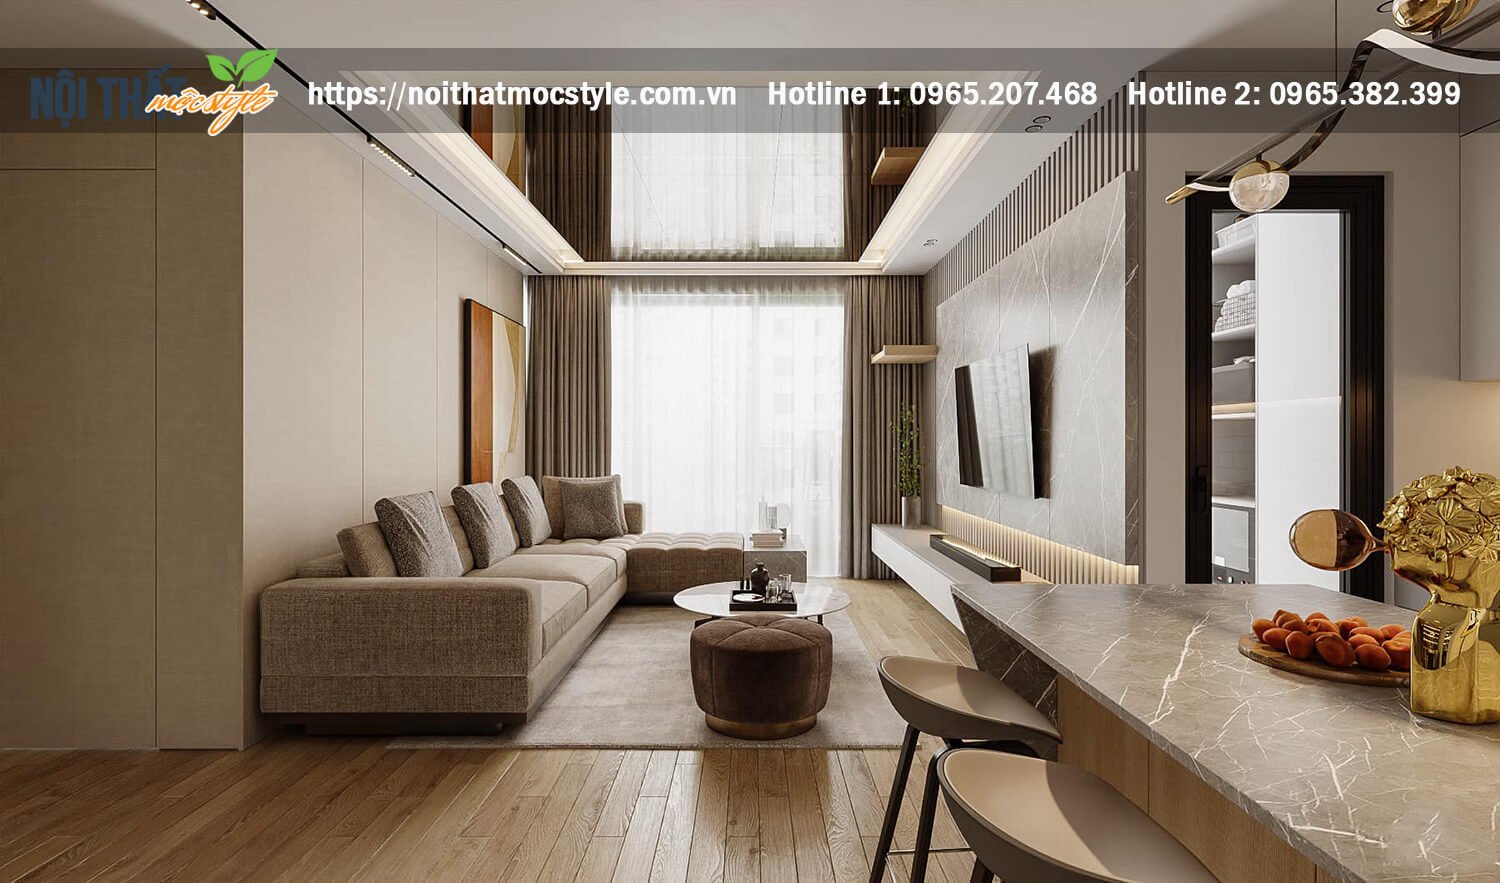 Thiết kế nội thất chung cư với phong cách hiện đại với tông màu ghi sáng trầm ấm và sang xịn